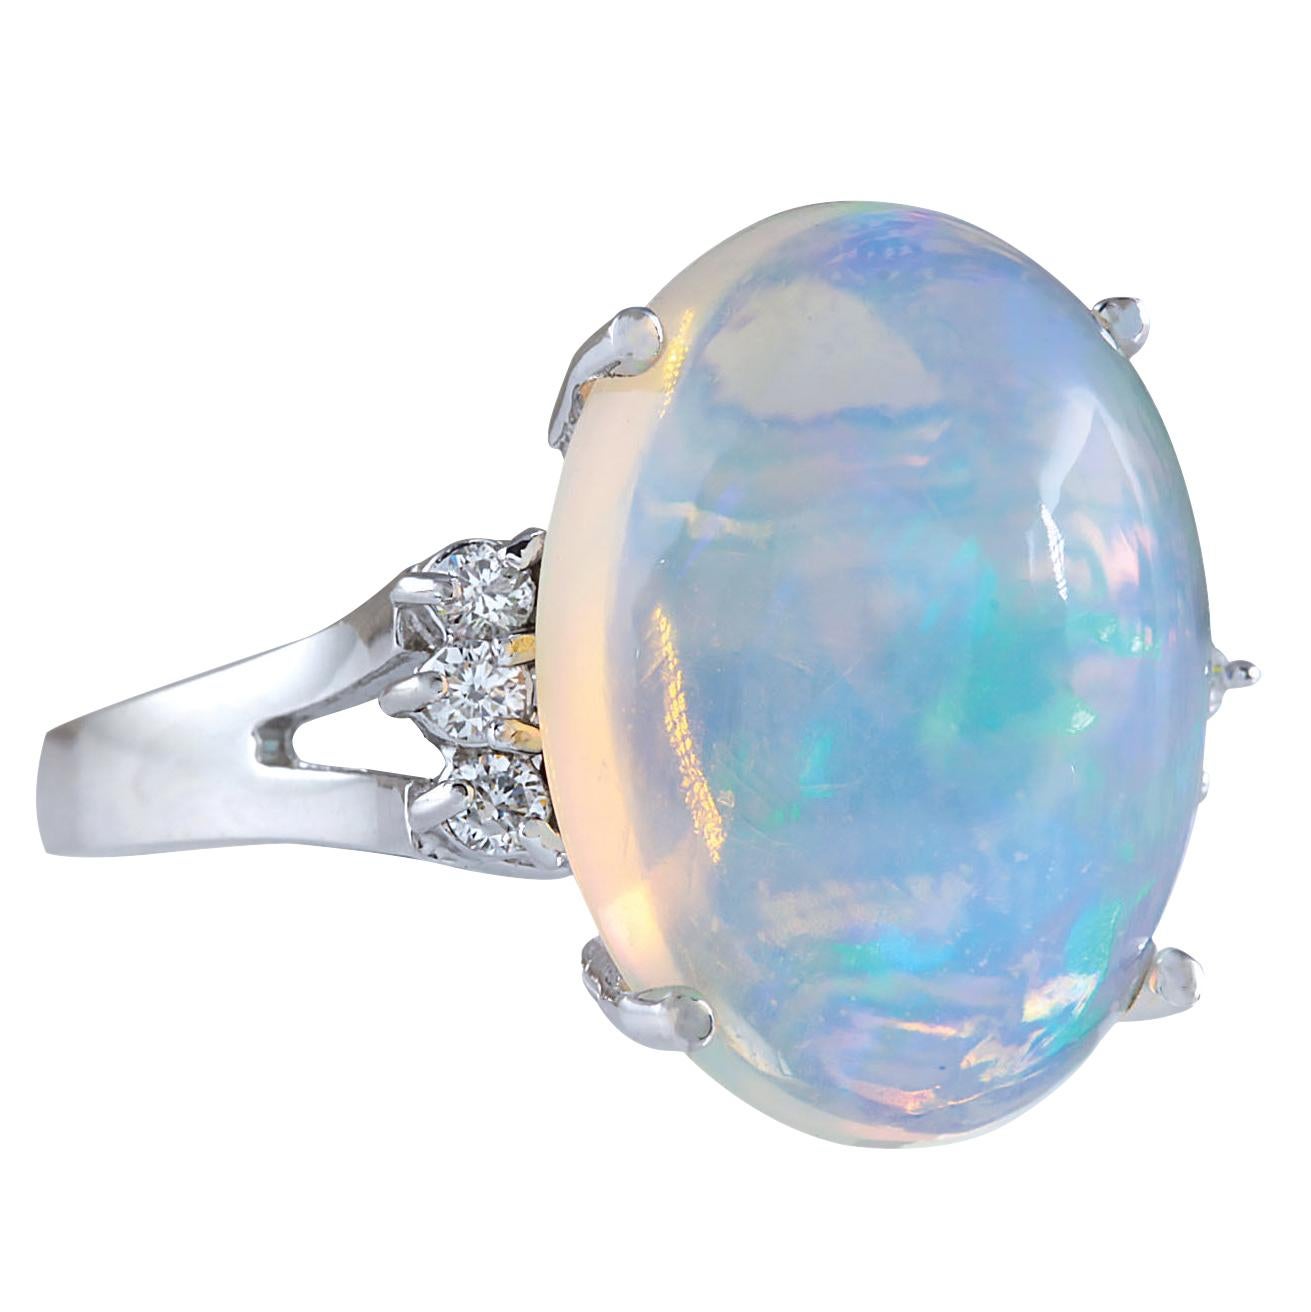 9.82 Carat Natural Opal 14 Karat White Gold Diamond Ring
Stamped: 14K White Gold
Total Ring Weight: 6.0 Grams
Total Natural Opal Weight is 9.62 Carat (Measures: 18.00x13.00 mm)
Color: Multicolor
Total Natural Diamond Weight is 0.20 Carat
Color: F-G,